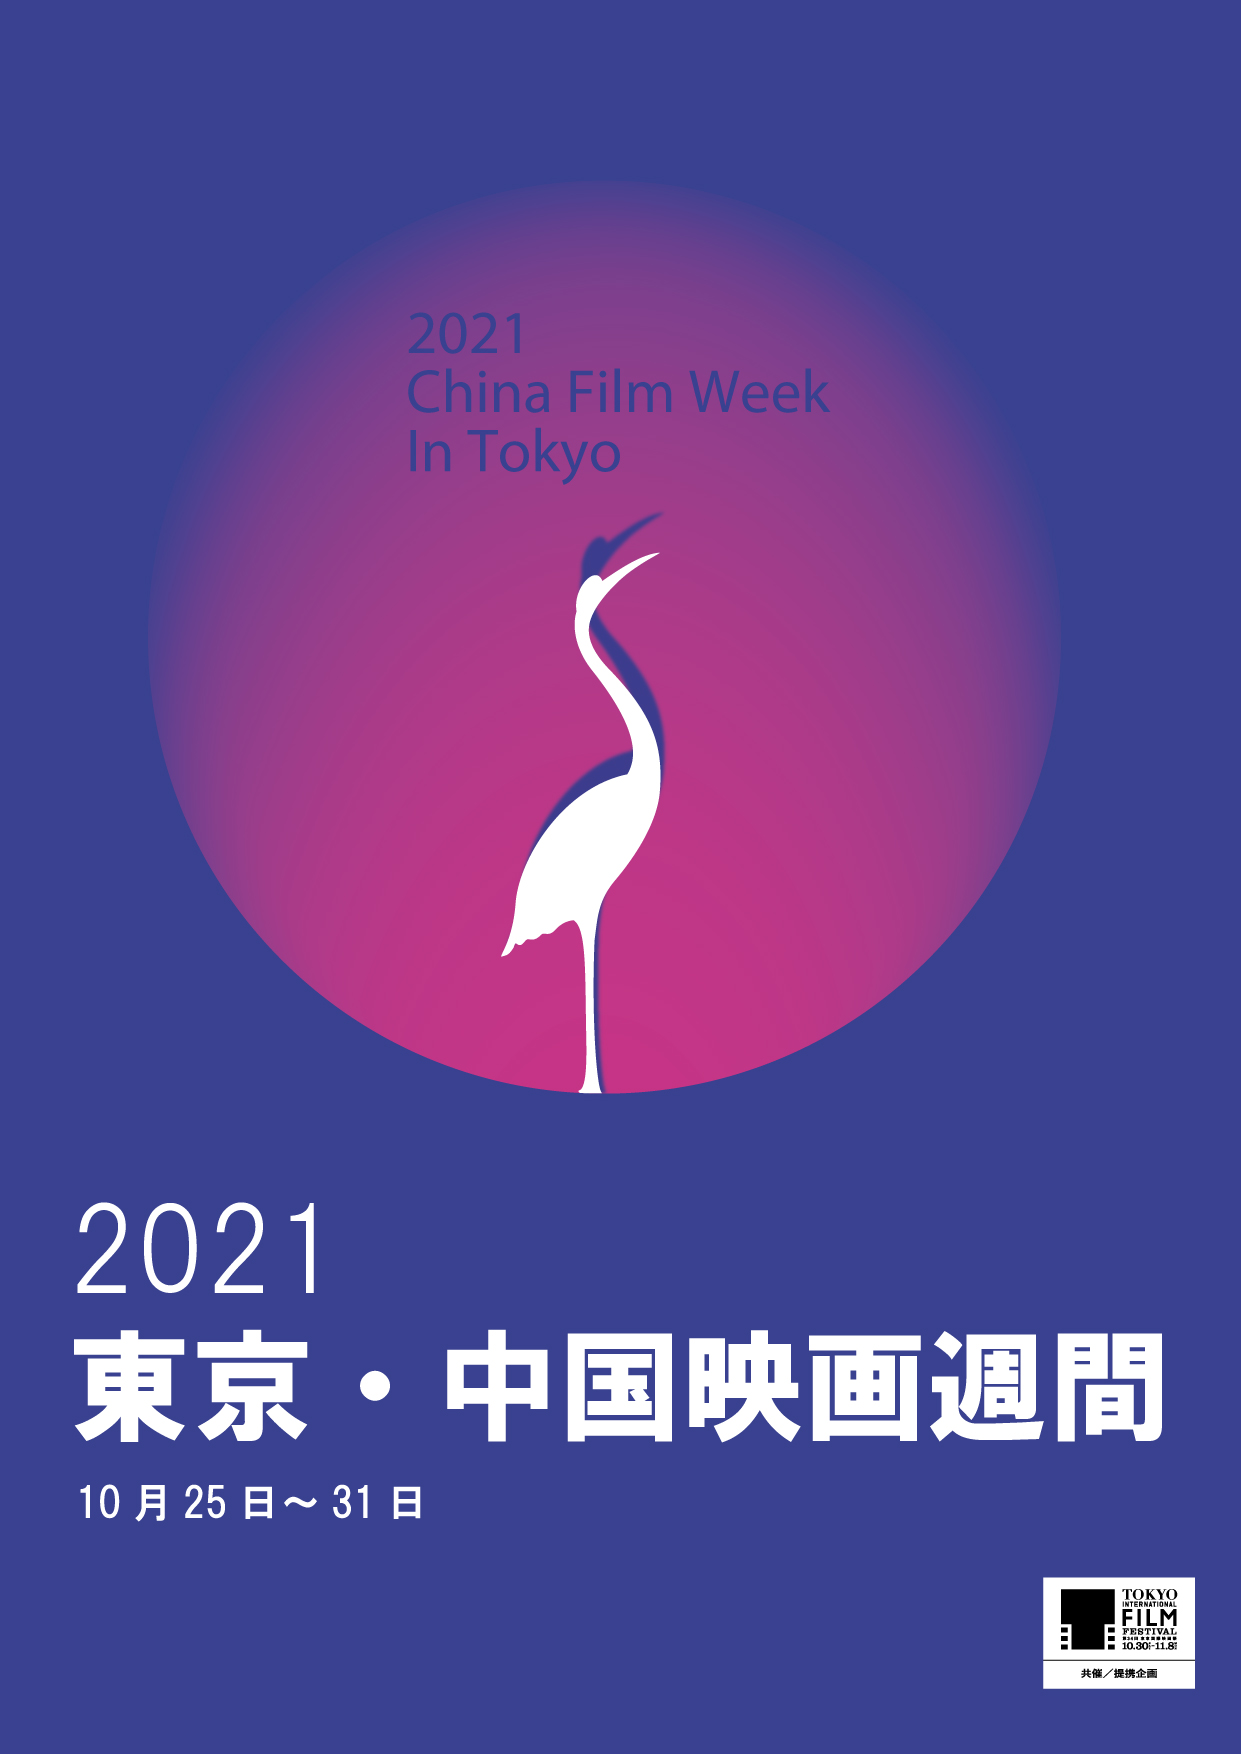 中国映画の最新作 話題作を上映する 21東京 中国映画週間 開催決定 Npo法人日中映画祭実行委員会のプレスリリース